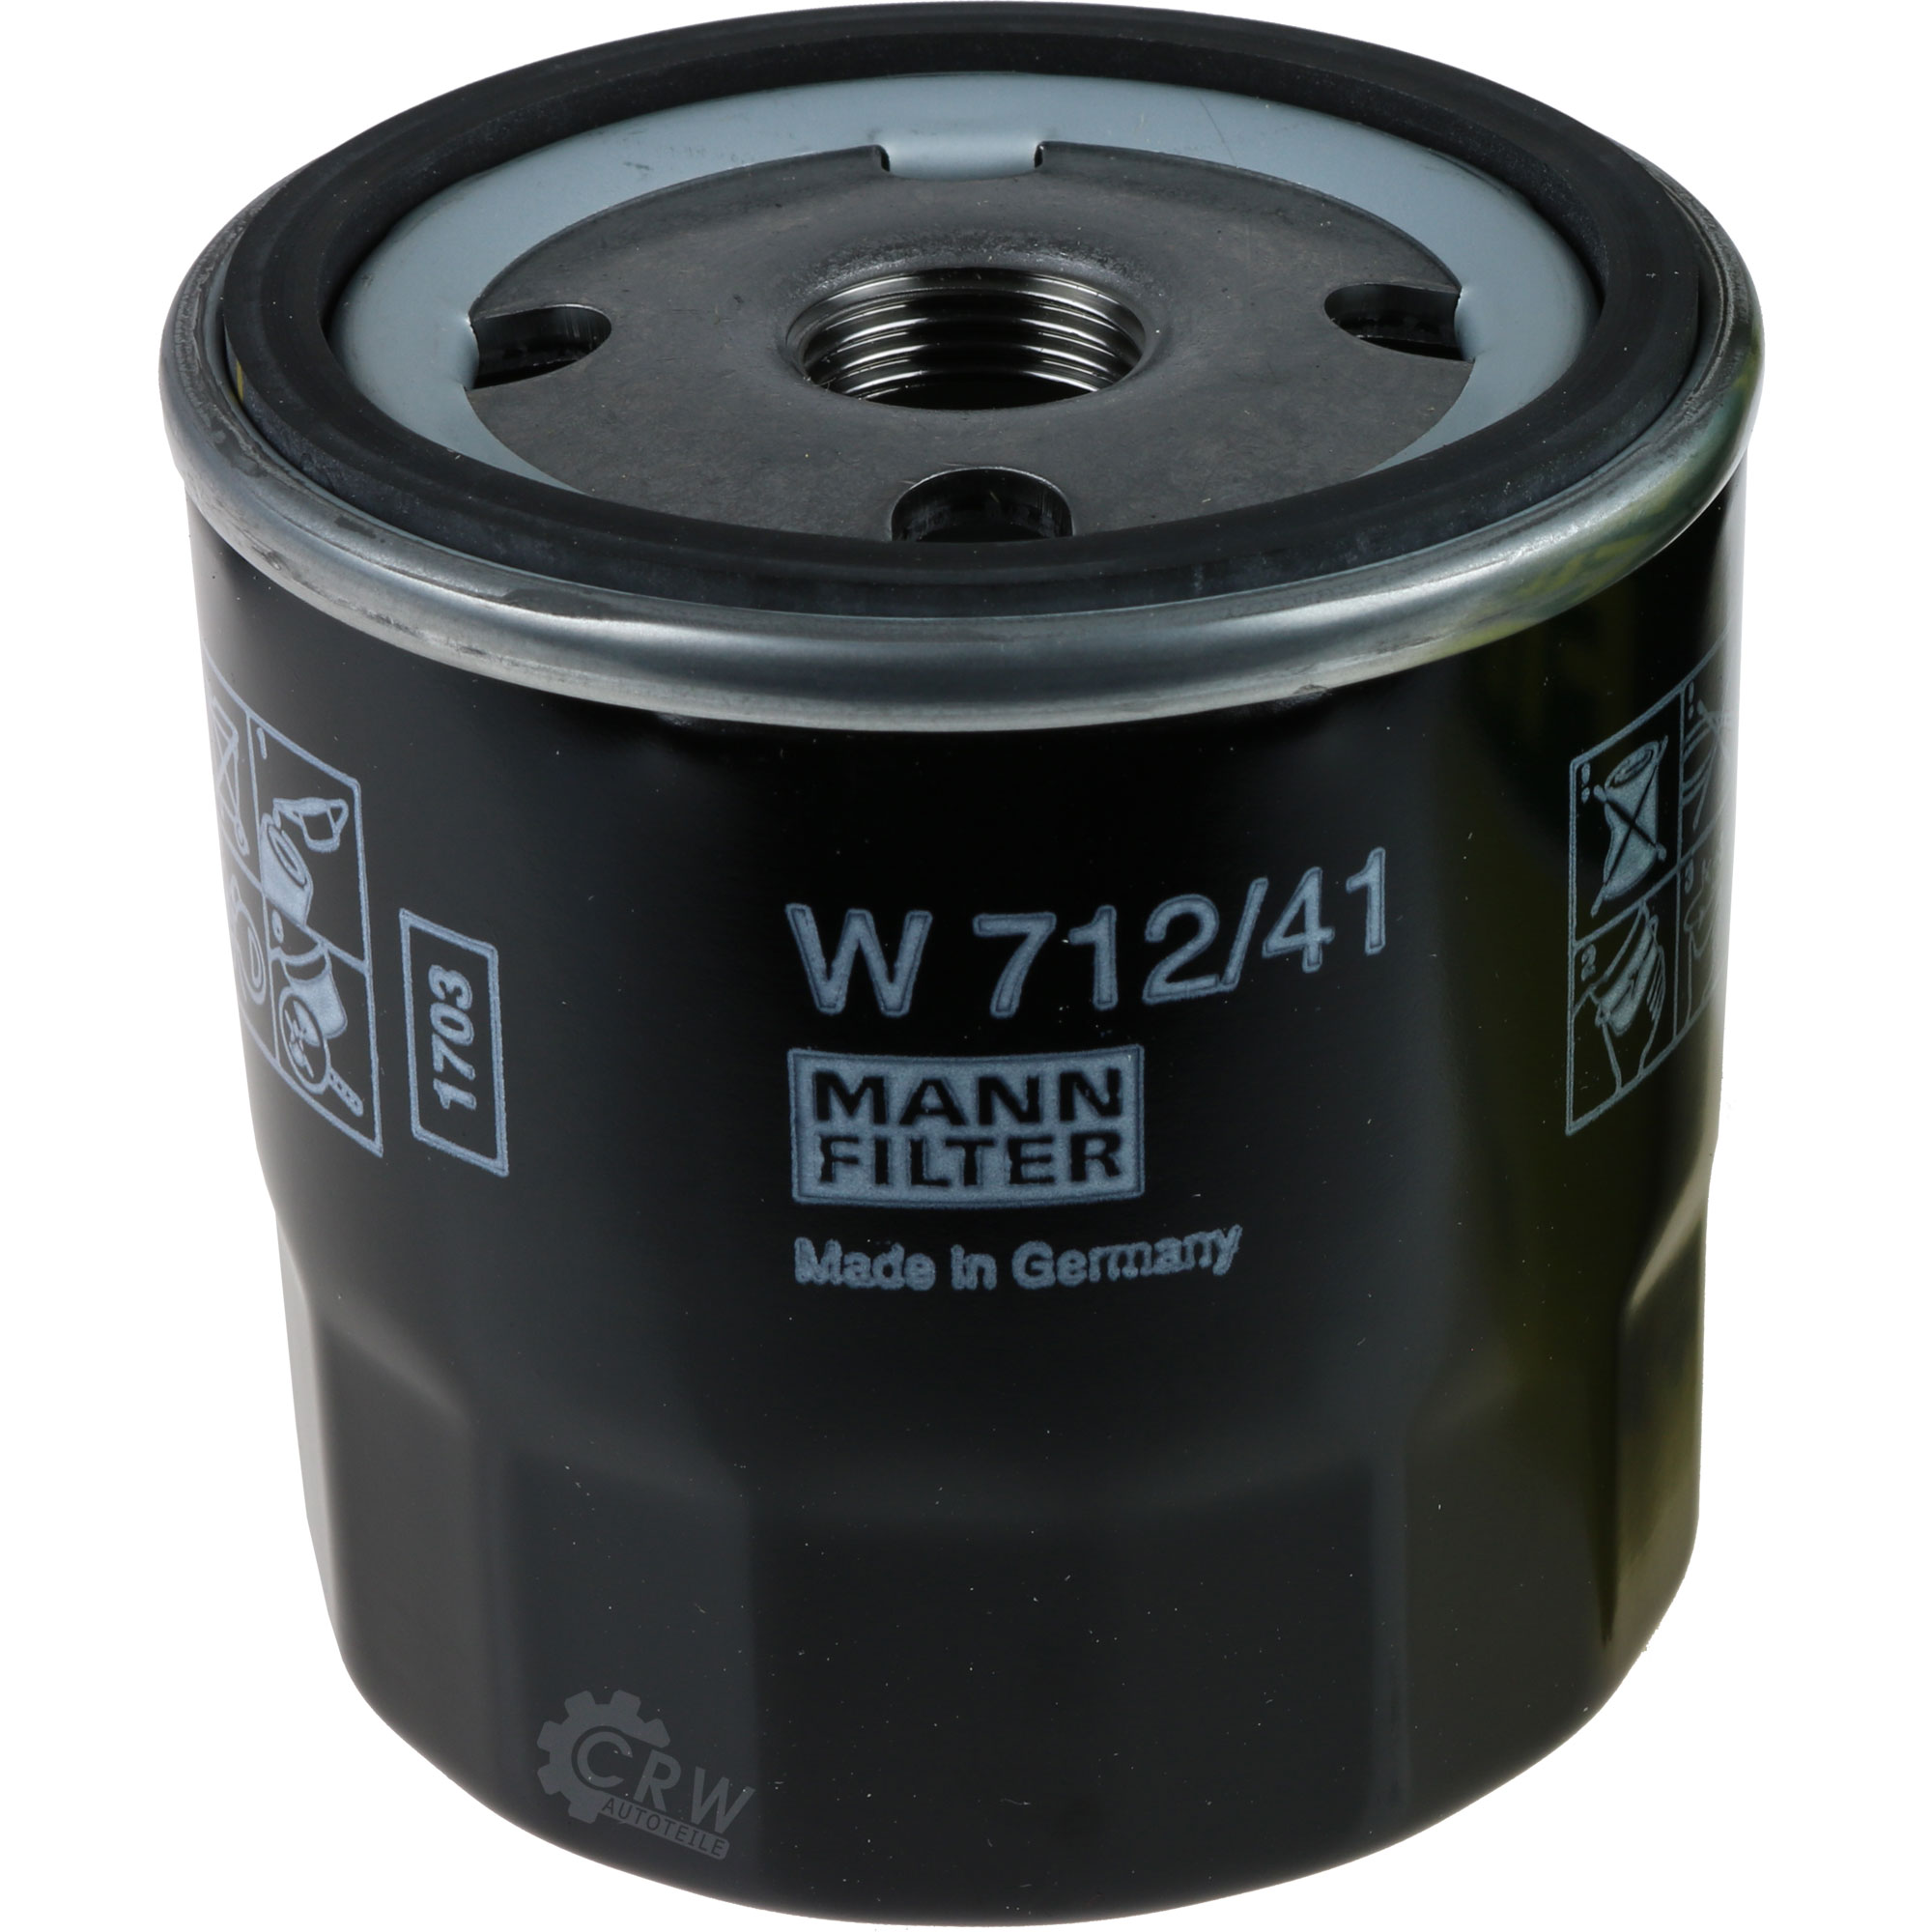 MANN-FILTER Ölfilter W 712/41 Oil Filter